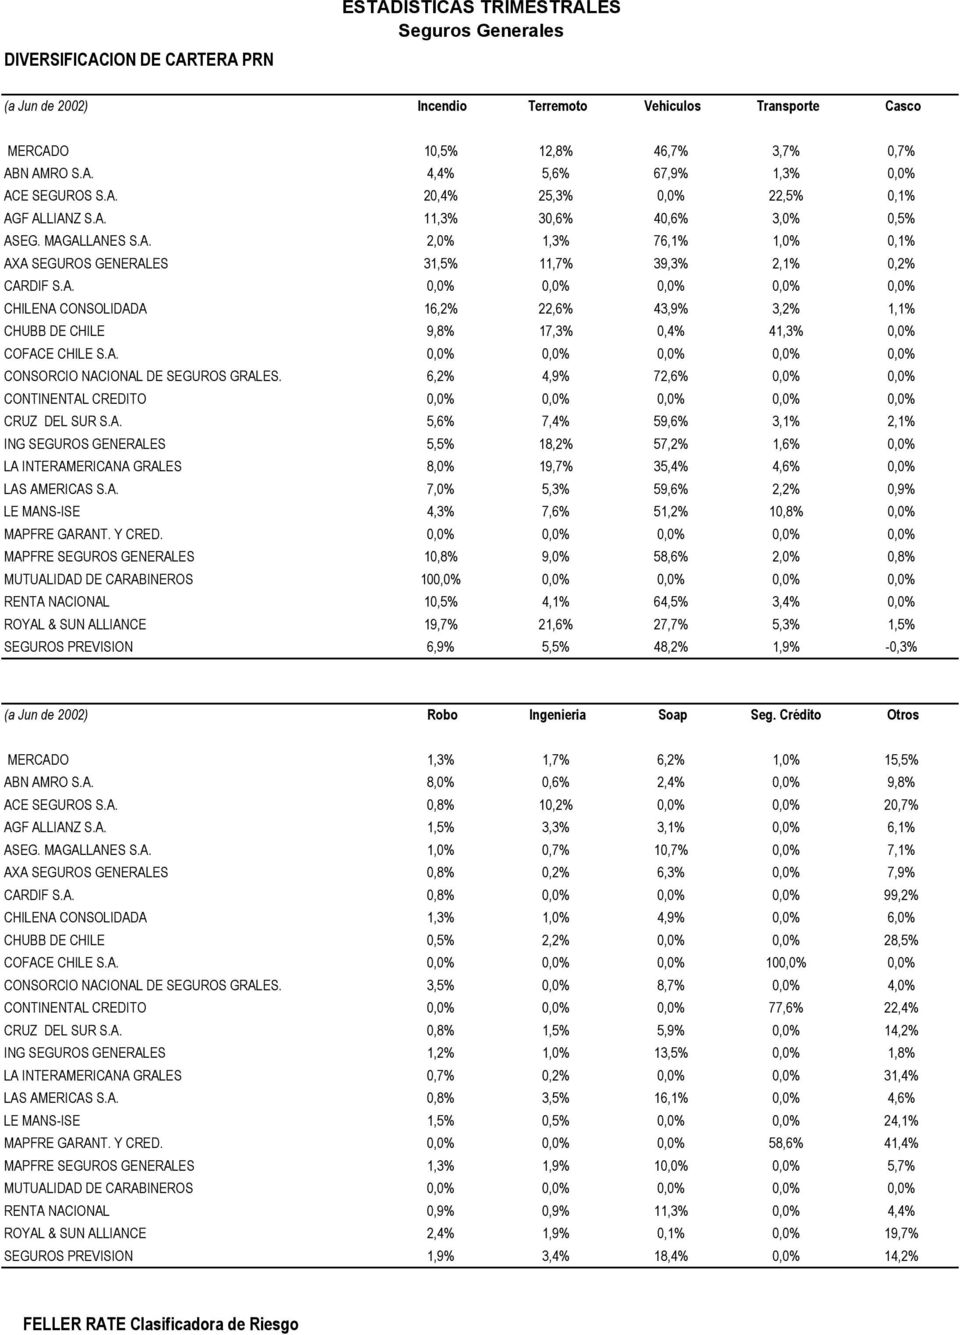 A. 0,0% 0,0% 0,0% 0,0% 0,0% CONSORCIO NACIONAL DE SEGUROS GRALES. 6,2% 4,9% 72,6% 0,0% 0,0% CONTINENTAL CREDITO 0,0% 0,0% 0,0% 0,0% 0,0% CRUZ DEL SUR S.A. 5,6% 7,4% 59,6% 3,1% 2,1% ING SEGUROS GENERALES 5,5% 18,2% 57,2% 1,6% 0,0% LA INTERAMERICANA GRALES 8,0% 19,7% 35,4% 4,6% 0,0% LAS AMERICAS S.